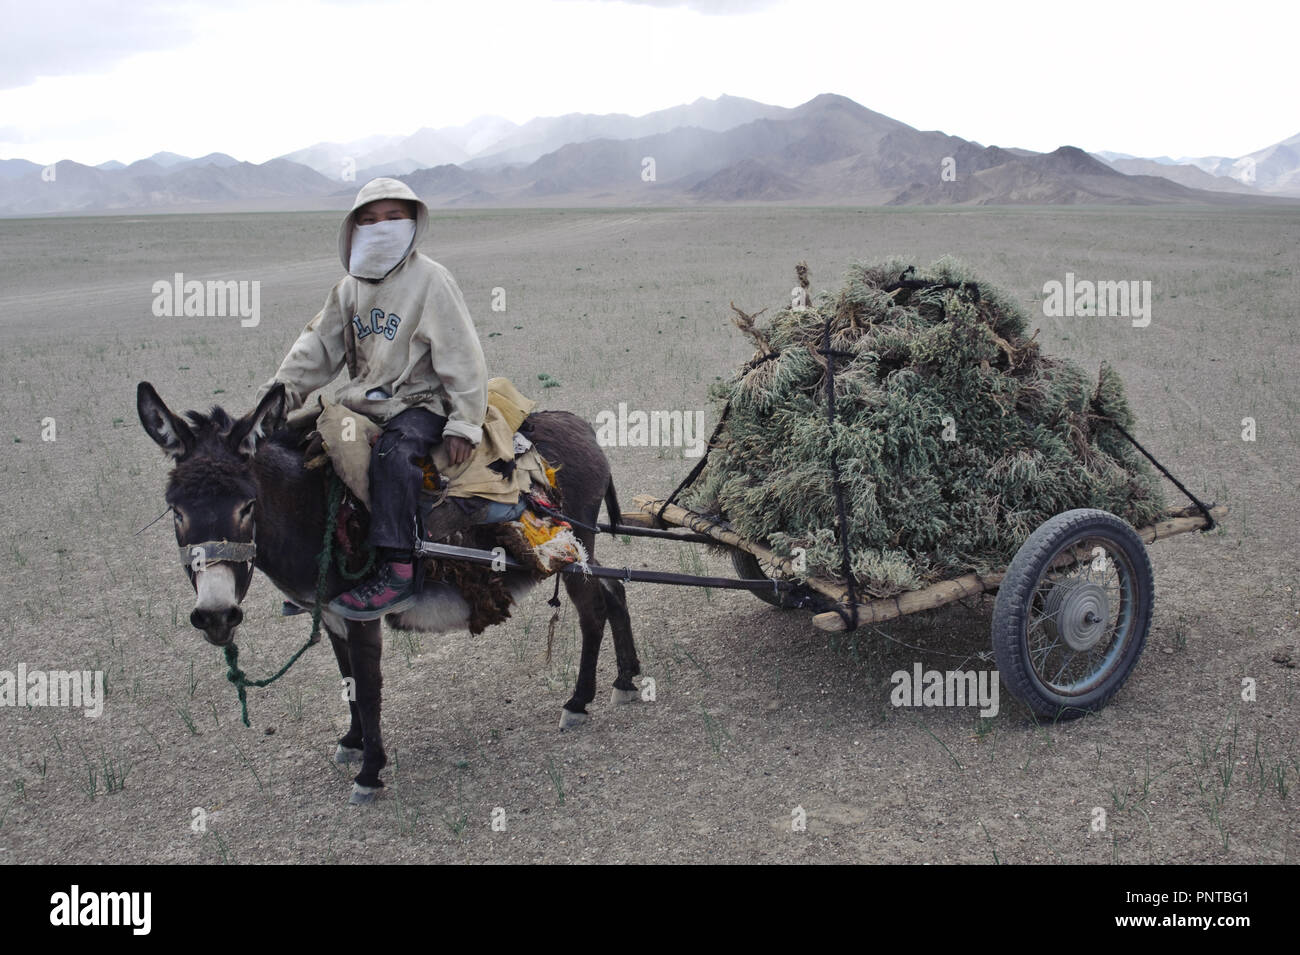 Junge sammeln Sträucher verwendet als brennbar in die Hochebene von Pamir (Tadschikistan). Die Entwurzelung der diese Pflanzen führt zu Wüstenbildung und... Stockfoto